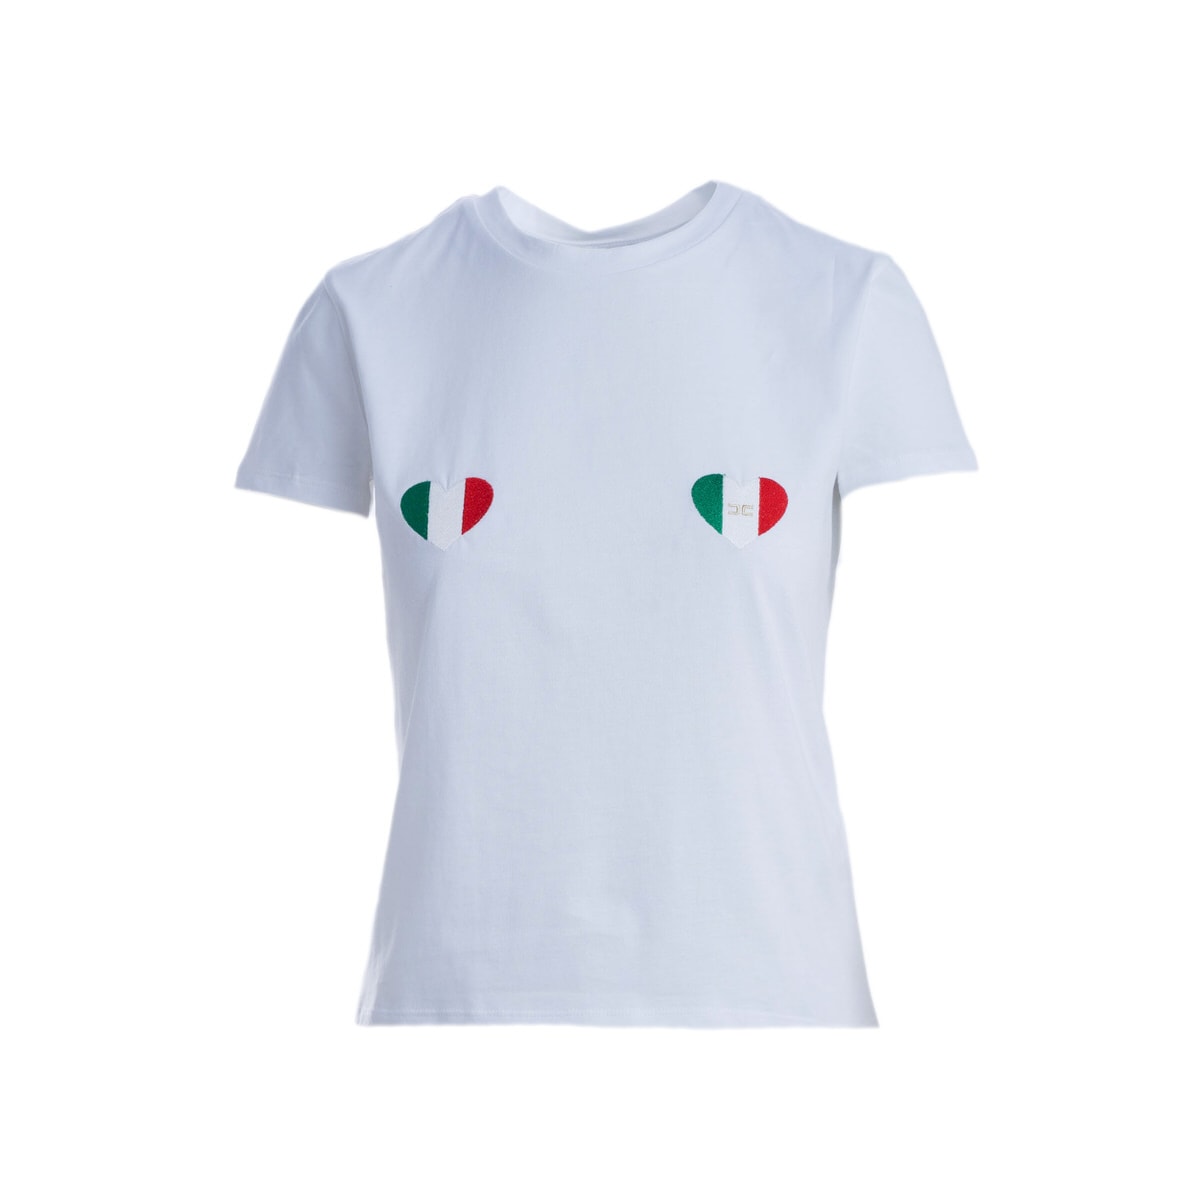 Elisabetta Franchi love Cotton T-shirt